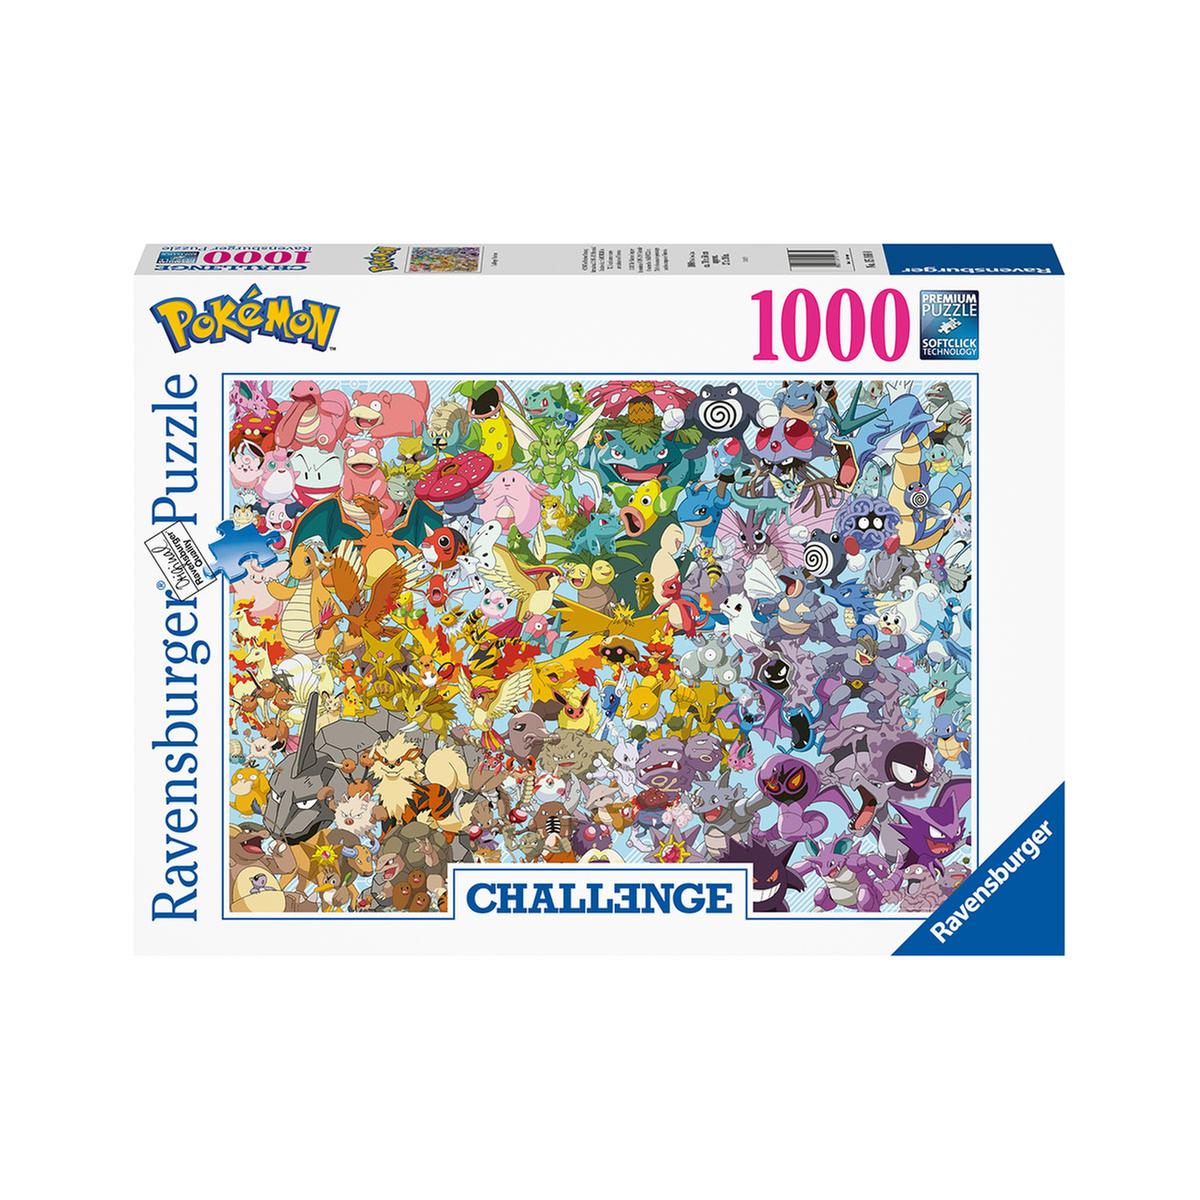 Ravensburger - Puzzle 1000 pcs Desafío Pokemon, Puzzle 100+ Pzas